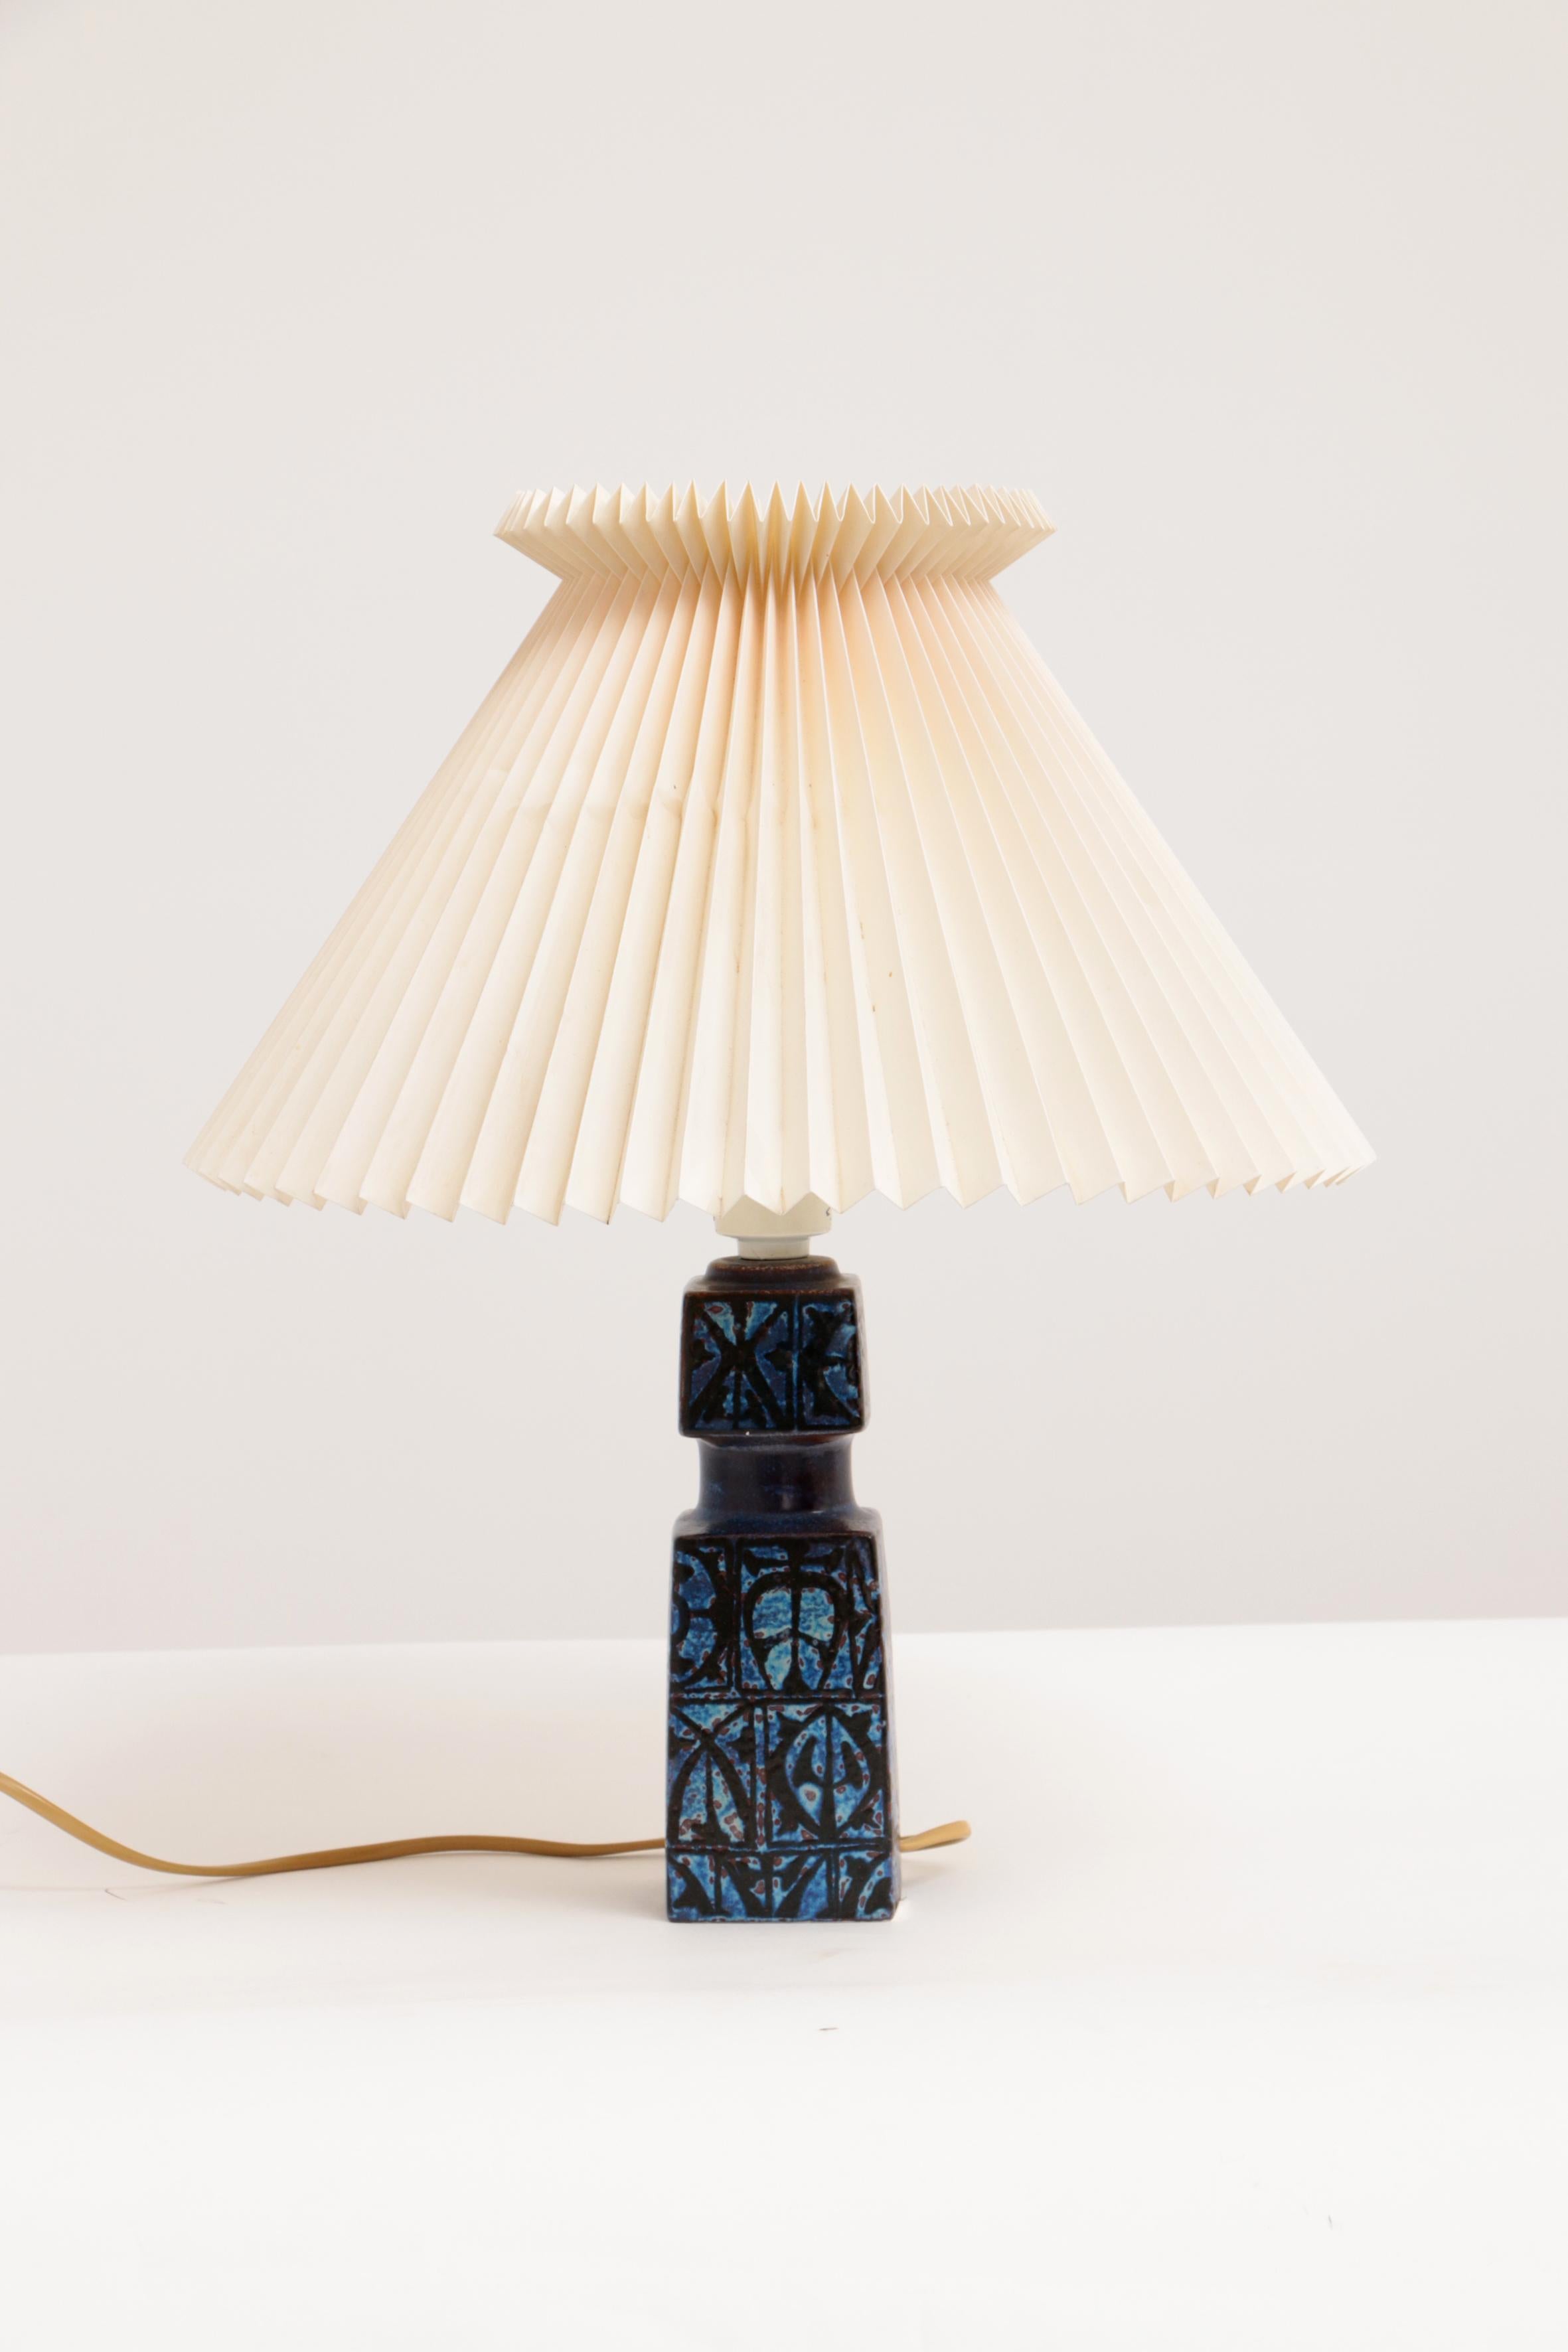 Blue Nils Thorsson Table Lamp for Royal Copenhagen/Fog & Mørup, 1970s For Sale 1